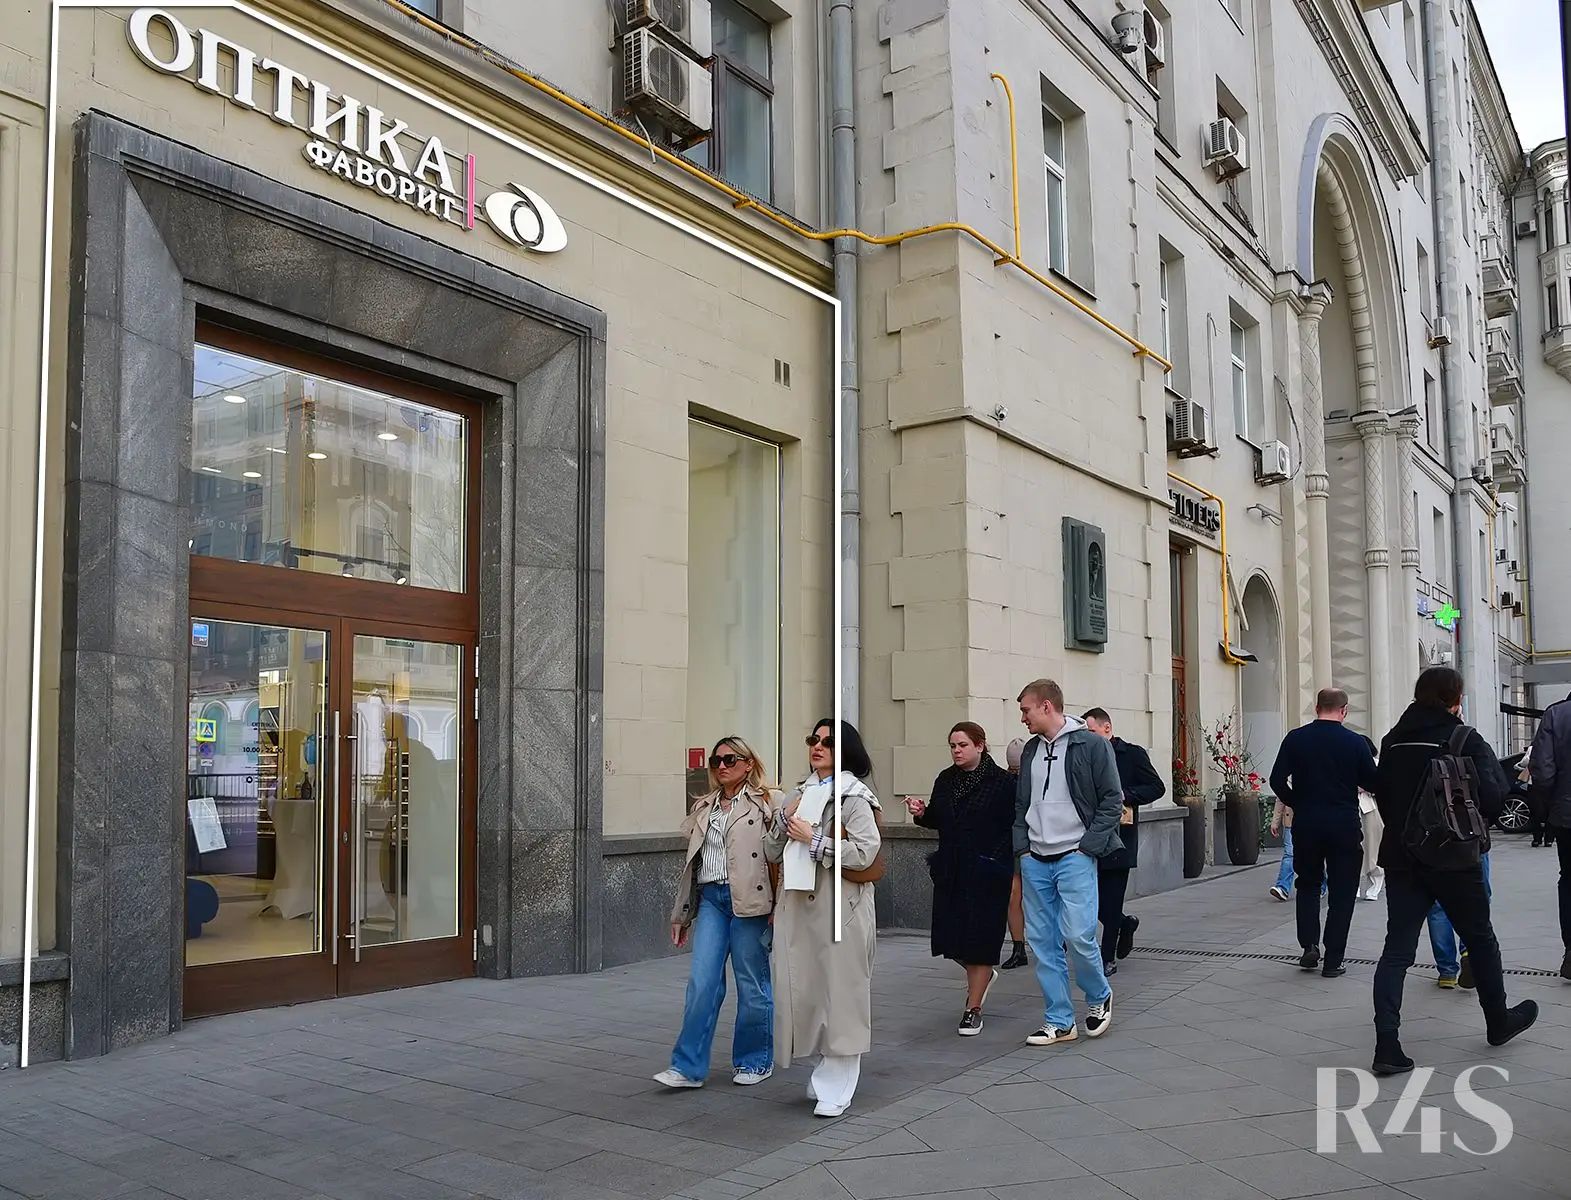 Продажа готового арендного бизнеса площадью 149.6 м2 в Москве: Тверская, 15 R4S | Realty4Sale